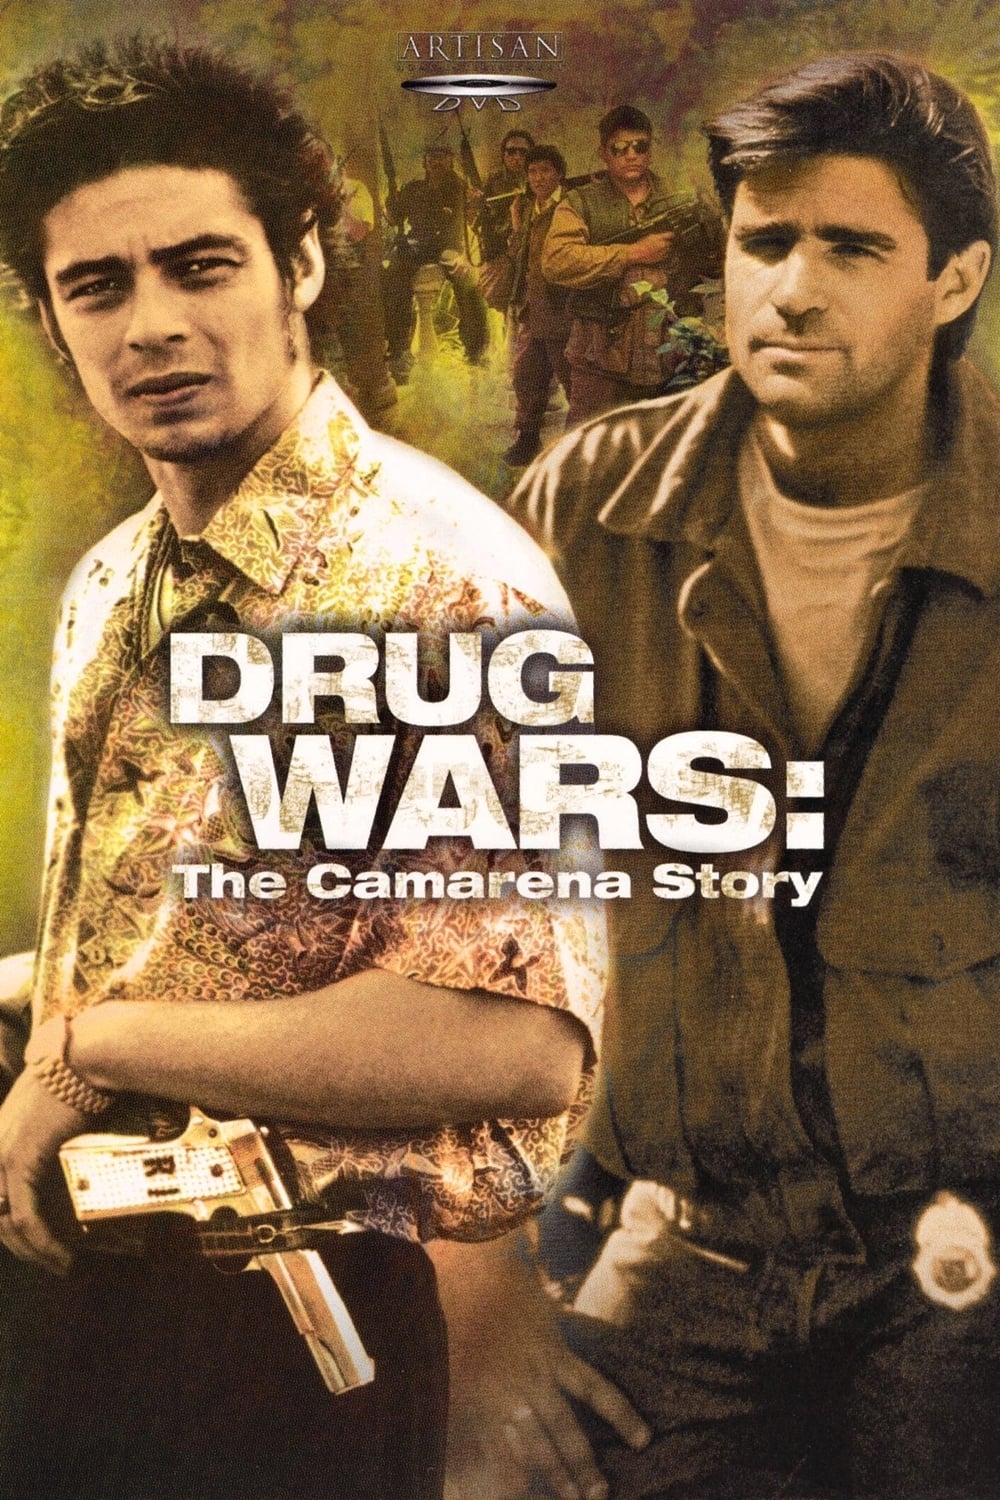 Drug Wars: The Camarena Story TV Shows About War On Drugs